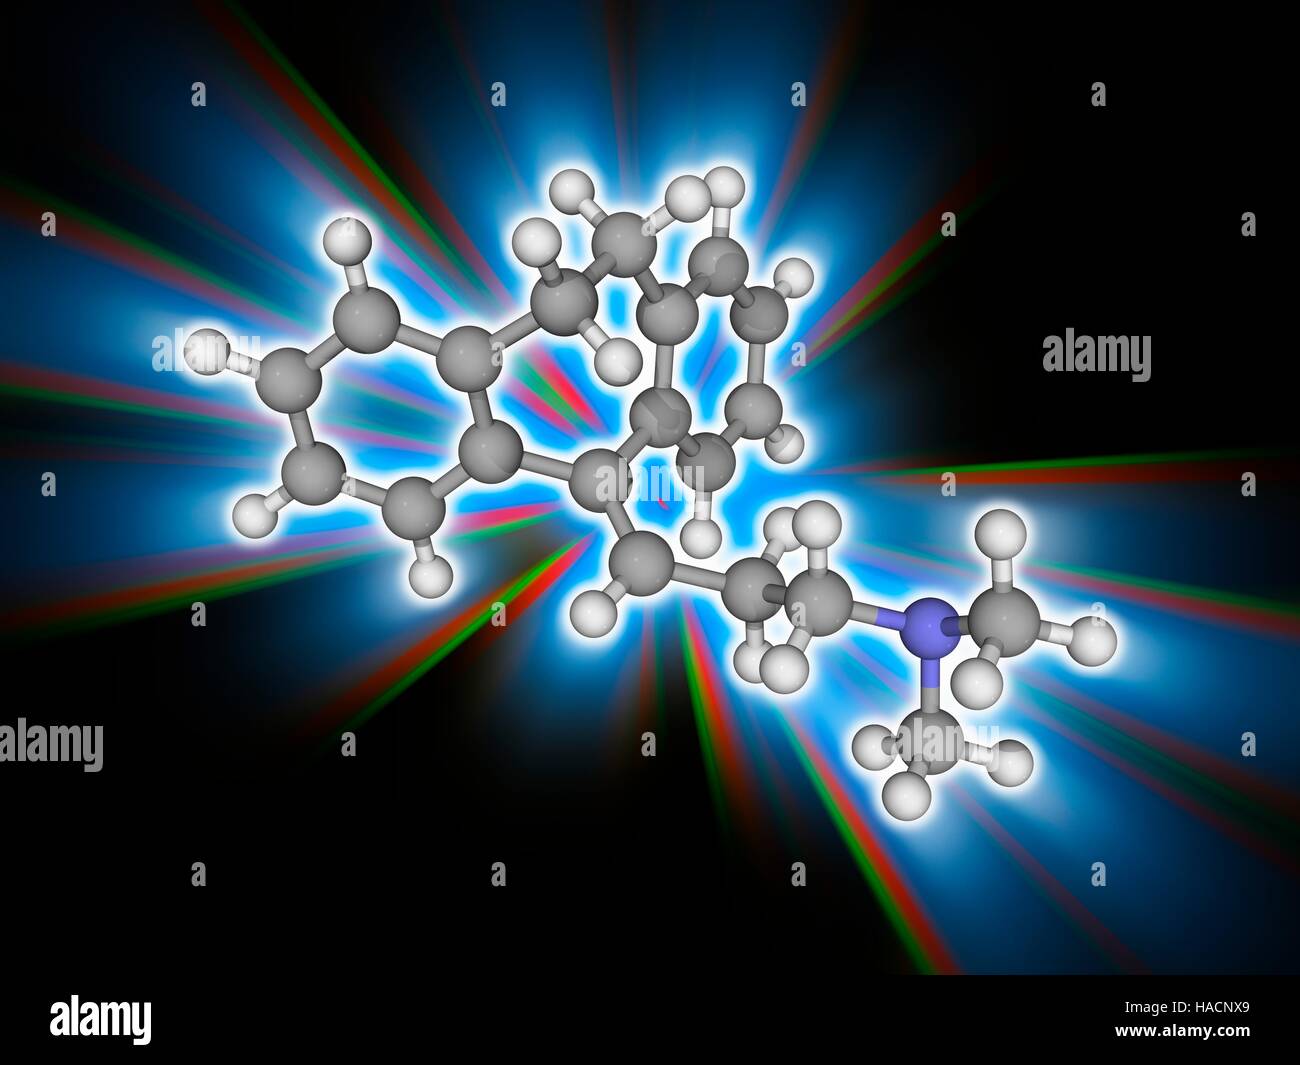 Amitriptylin. Molekulares Modell des Antidepressivum Medikament Amitriptylin (C20. H23. (N). dieses Medikament wird auch zur Behandlung einer Vielzahl von psychischen Störungen. Atome als Kugeln dargestellt werden und sind farblich gekennzeichnet: Kohlenstoff (grau), Wasserstoff (weiß) und Stickstoff (blau). Abbildung. Stockfoto